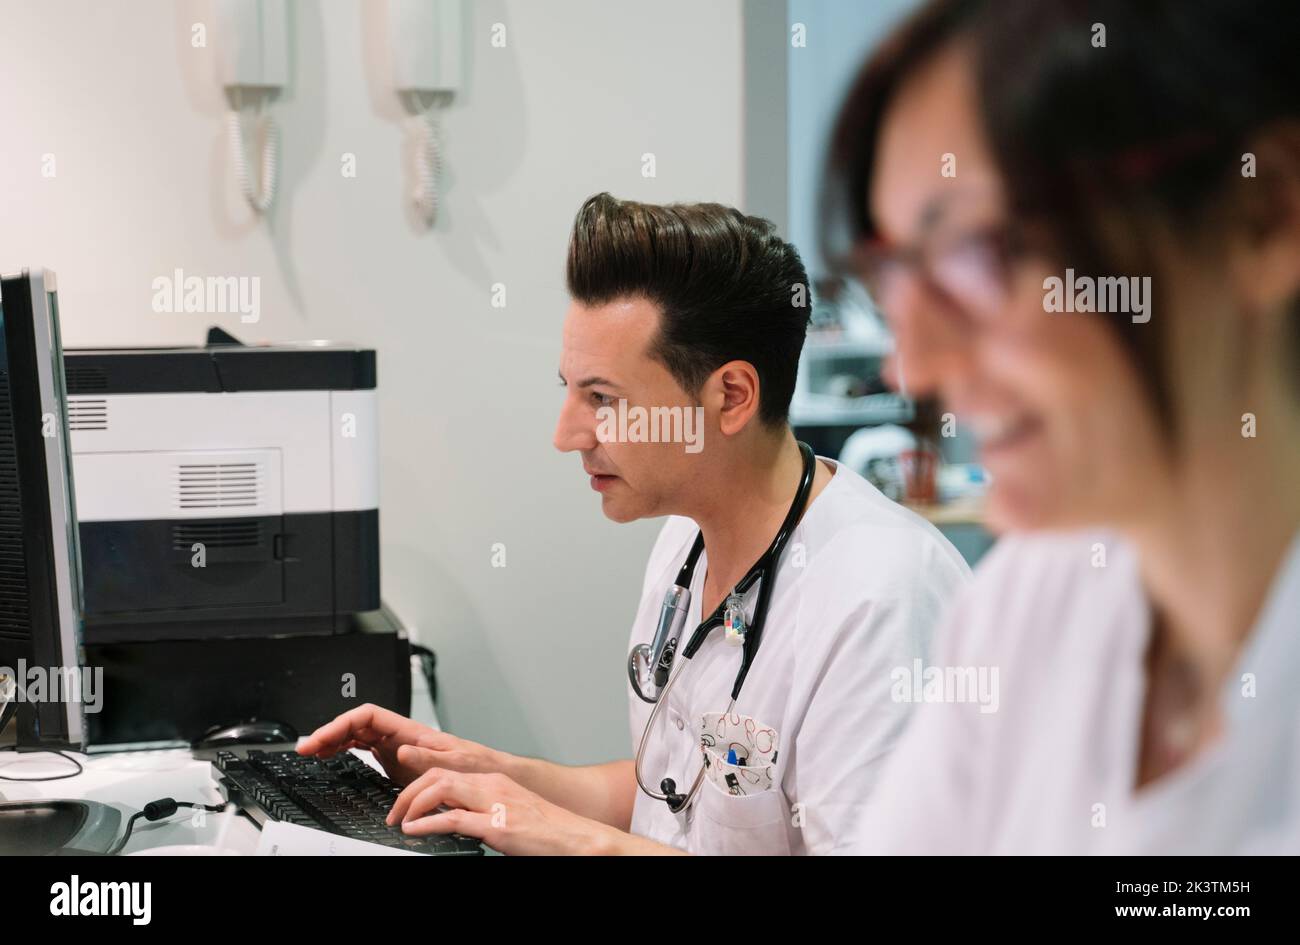 Vista lateral Doctor con enfermera anónima con uniforme blanco trabajando en la computadora en el hospital Foto de stock